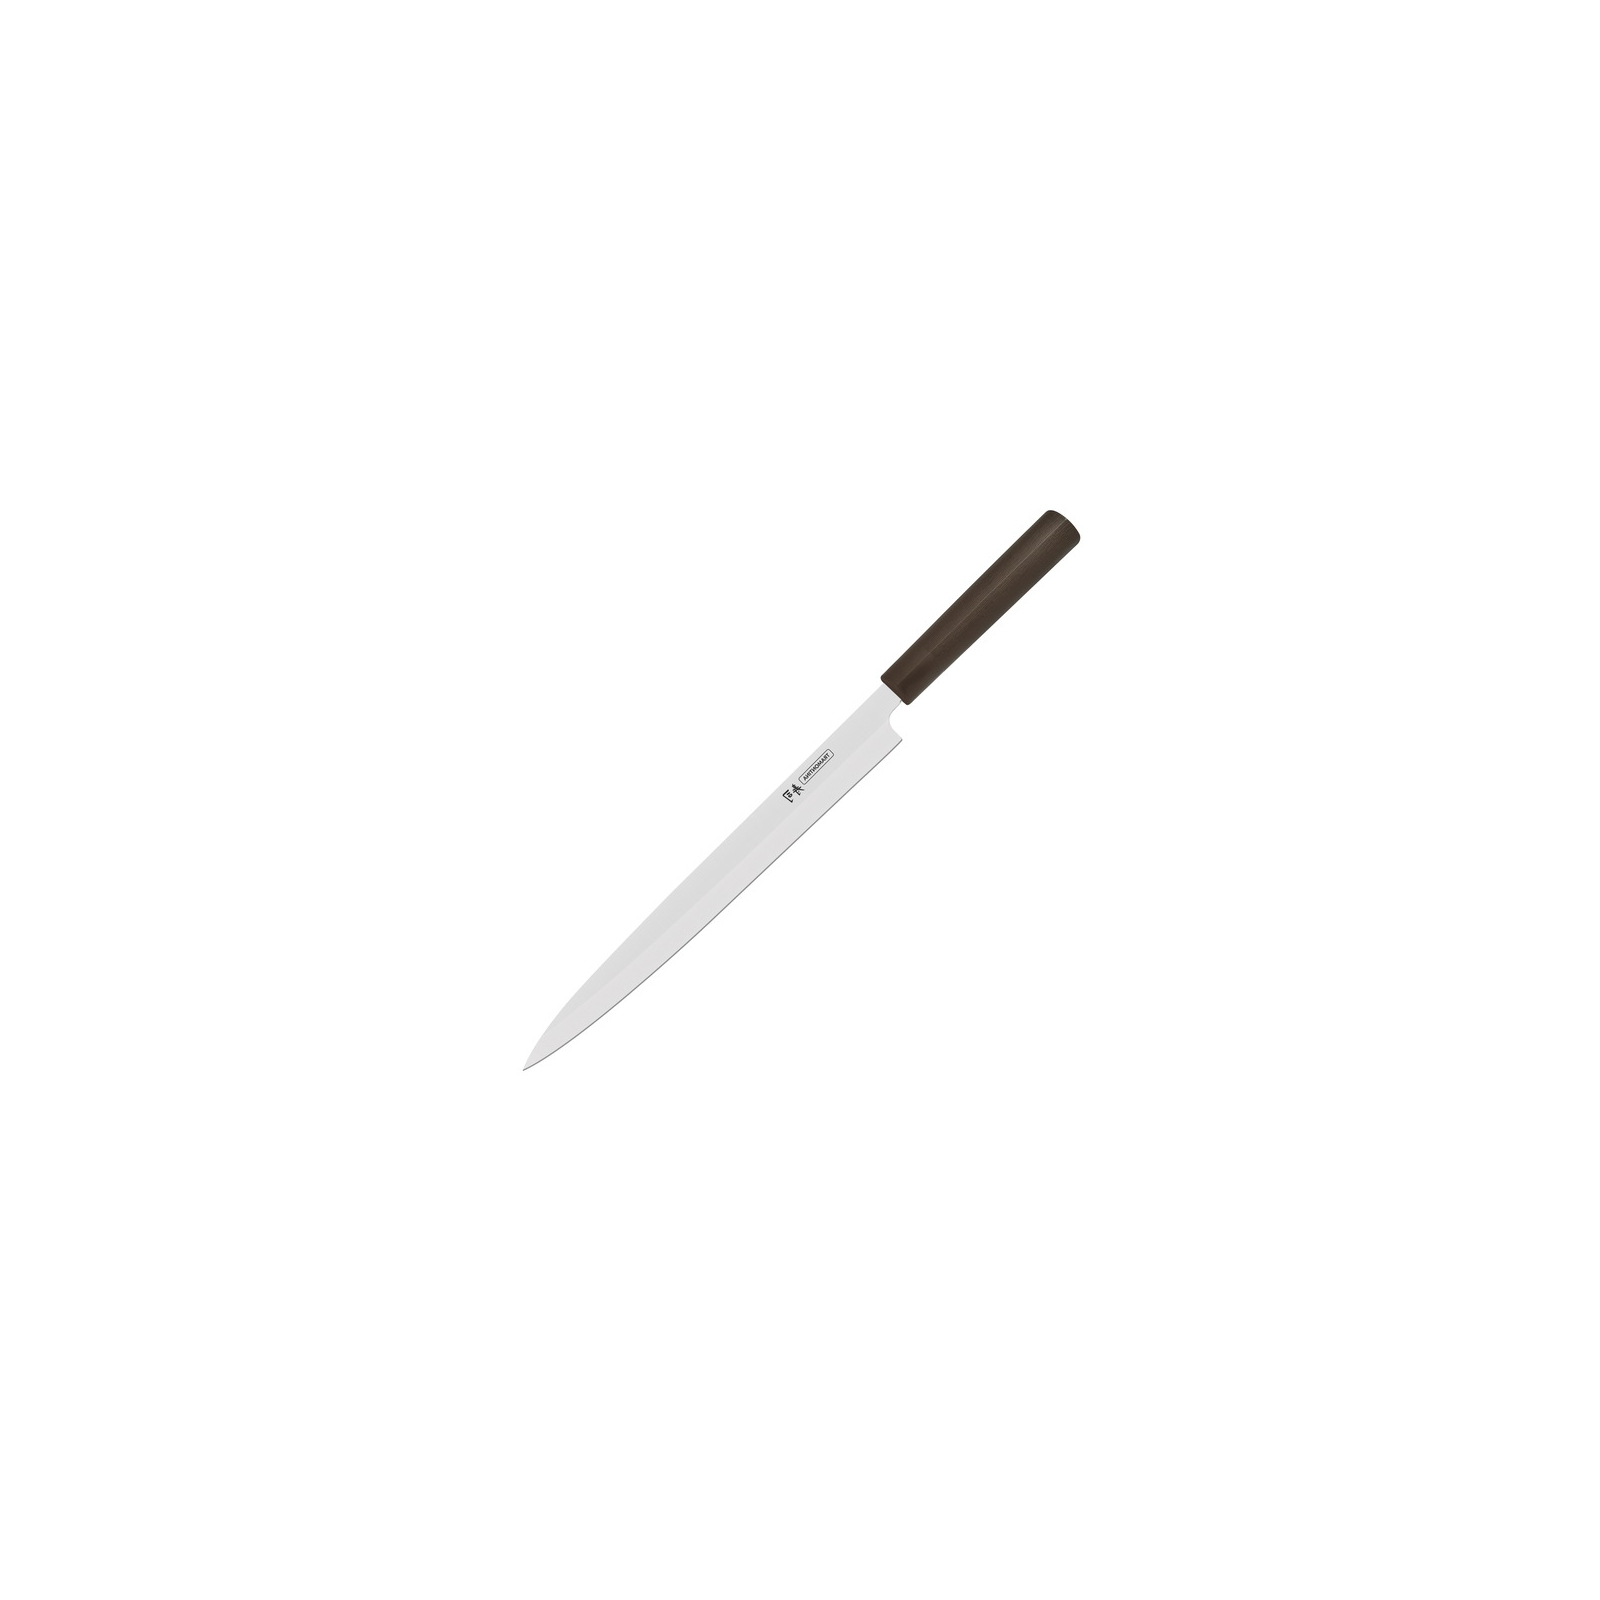 Кухонный нож Tramontina Sushi Silver Yanagiba 330 мм (24230/043)